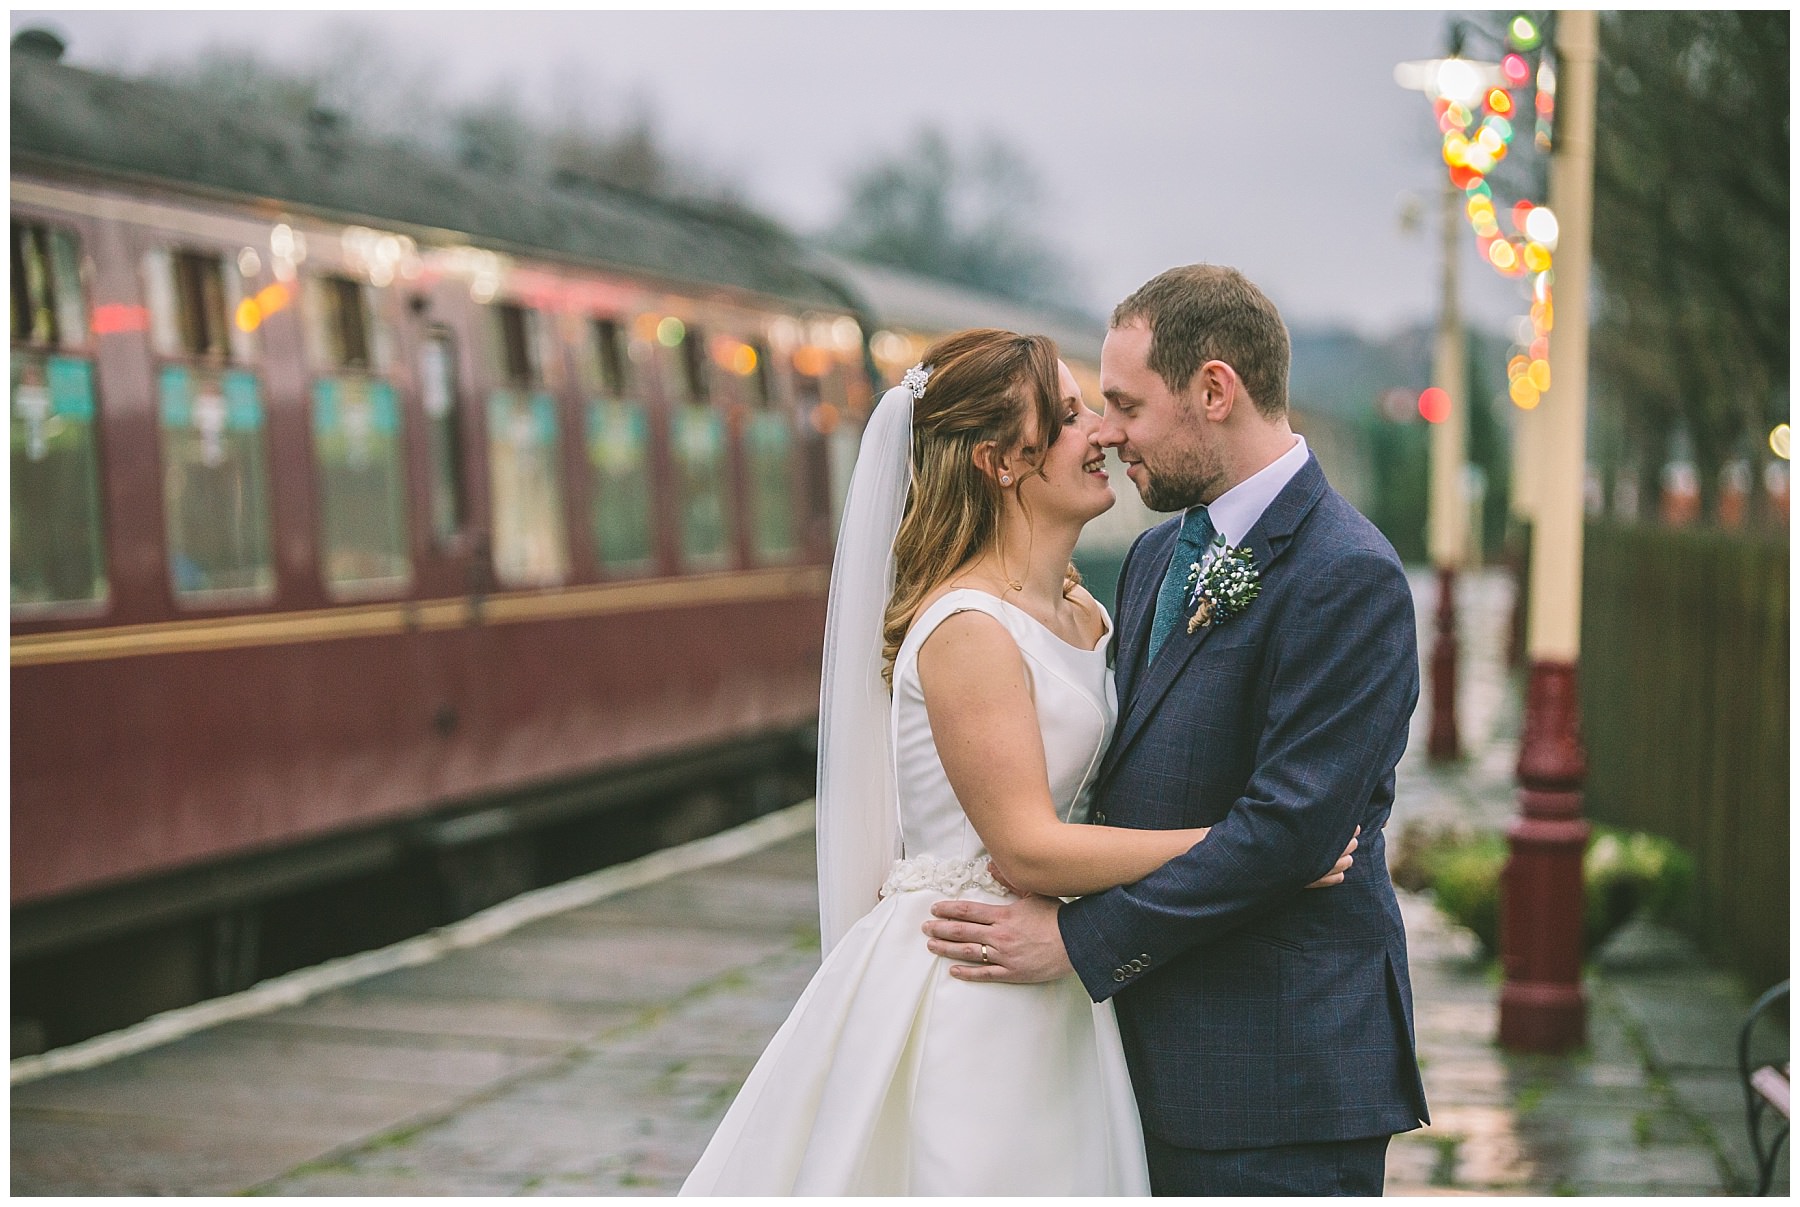 Wedding couple stand on steam rail platform